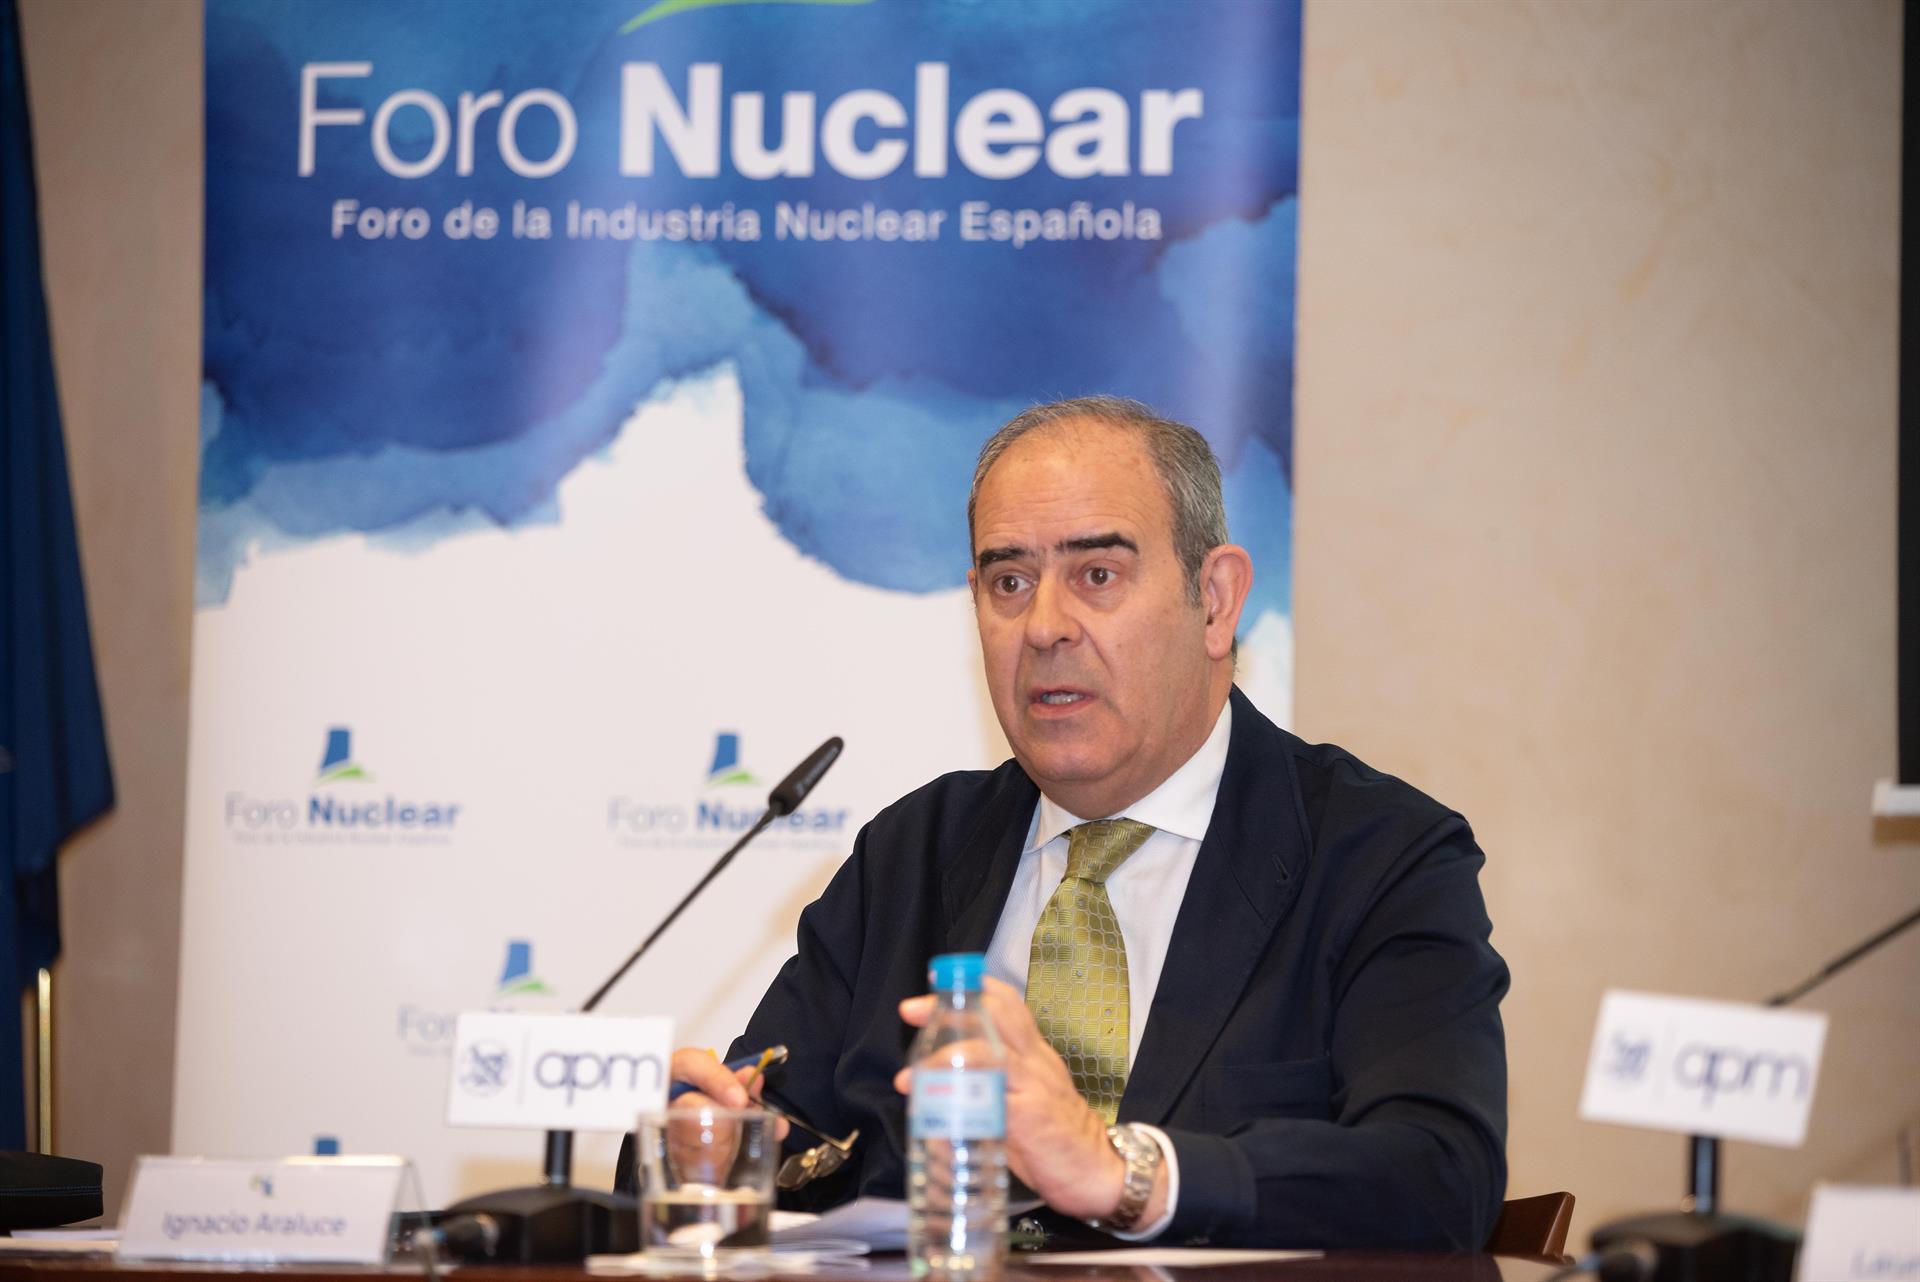 El presidente del Foro de la Energía Nuclear, Ignacio Araluce, presenta el Informe de Resultados nucleares de 2021 y perspectivas de futuro" en la sede de la Asociación de la Prensa de Madrid. Foto: Jorge Zorrilla